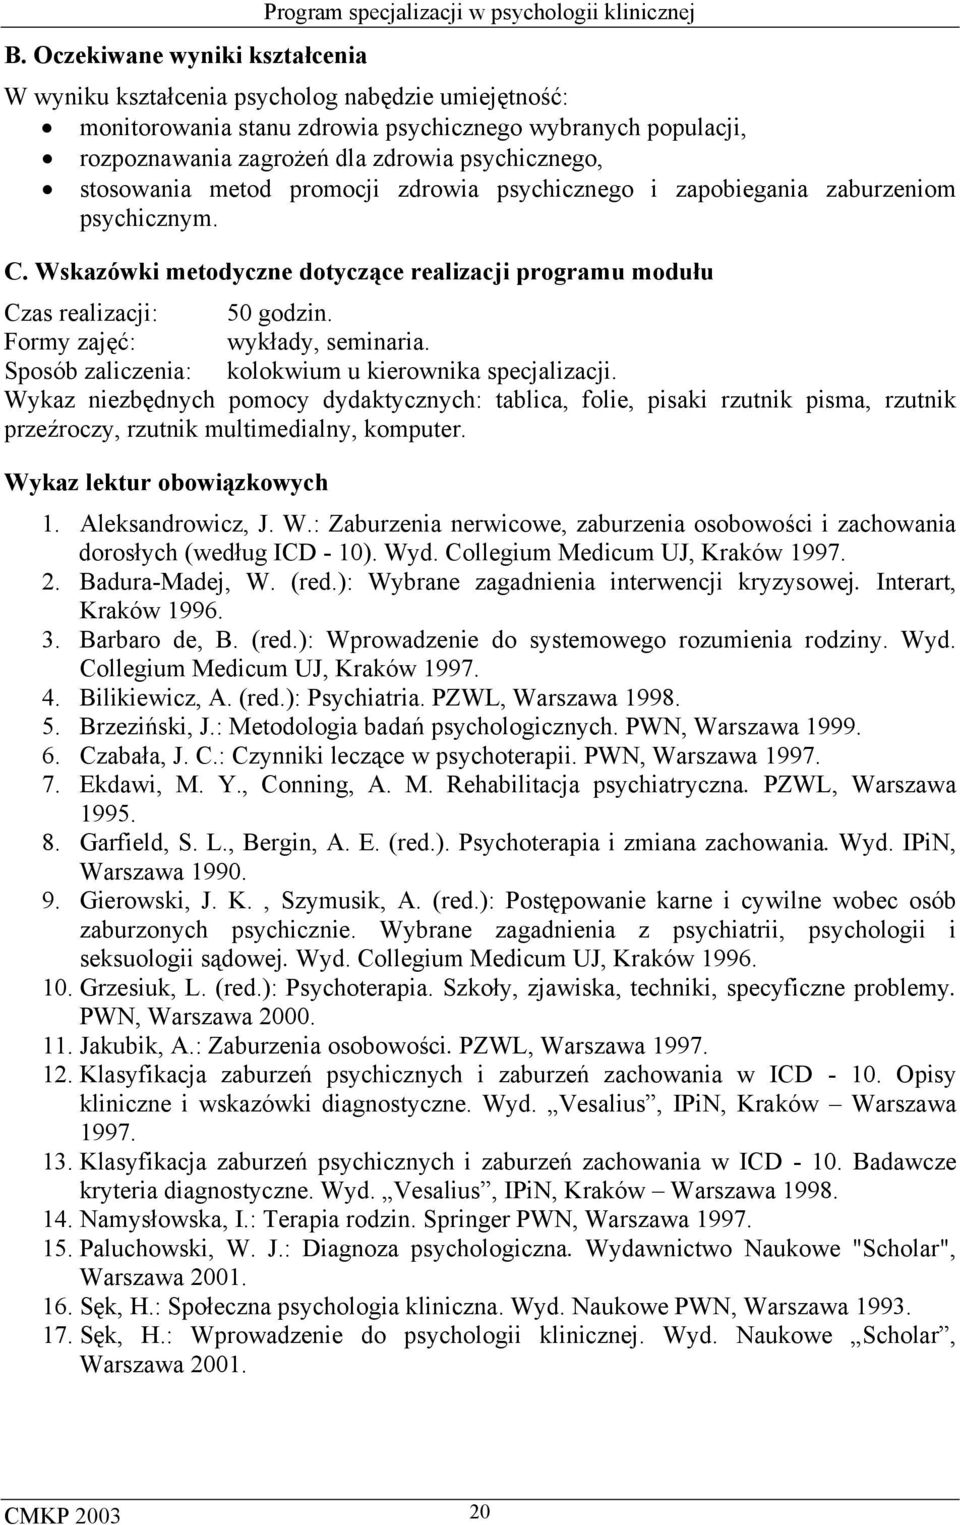 Collegium Medicum UJ, Kraków 1997. 2. Badura-Madej, W. (red.): Wybrane zagadnienia interwencji kryzysowej. Interart, Kraków 1996. 3. Barbaro de, B. (red.): Wprowadzenie do systemowego rozumienia rodziny.